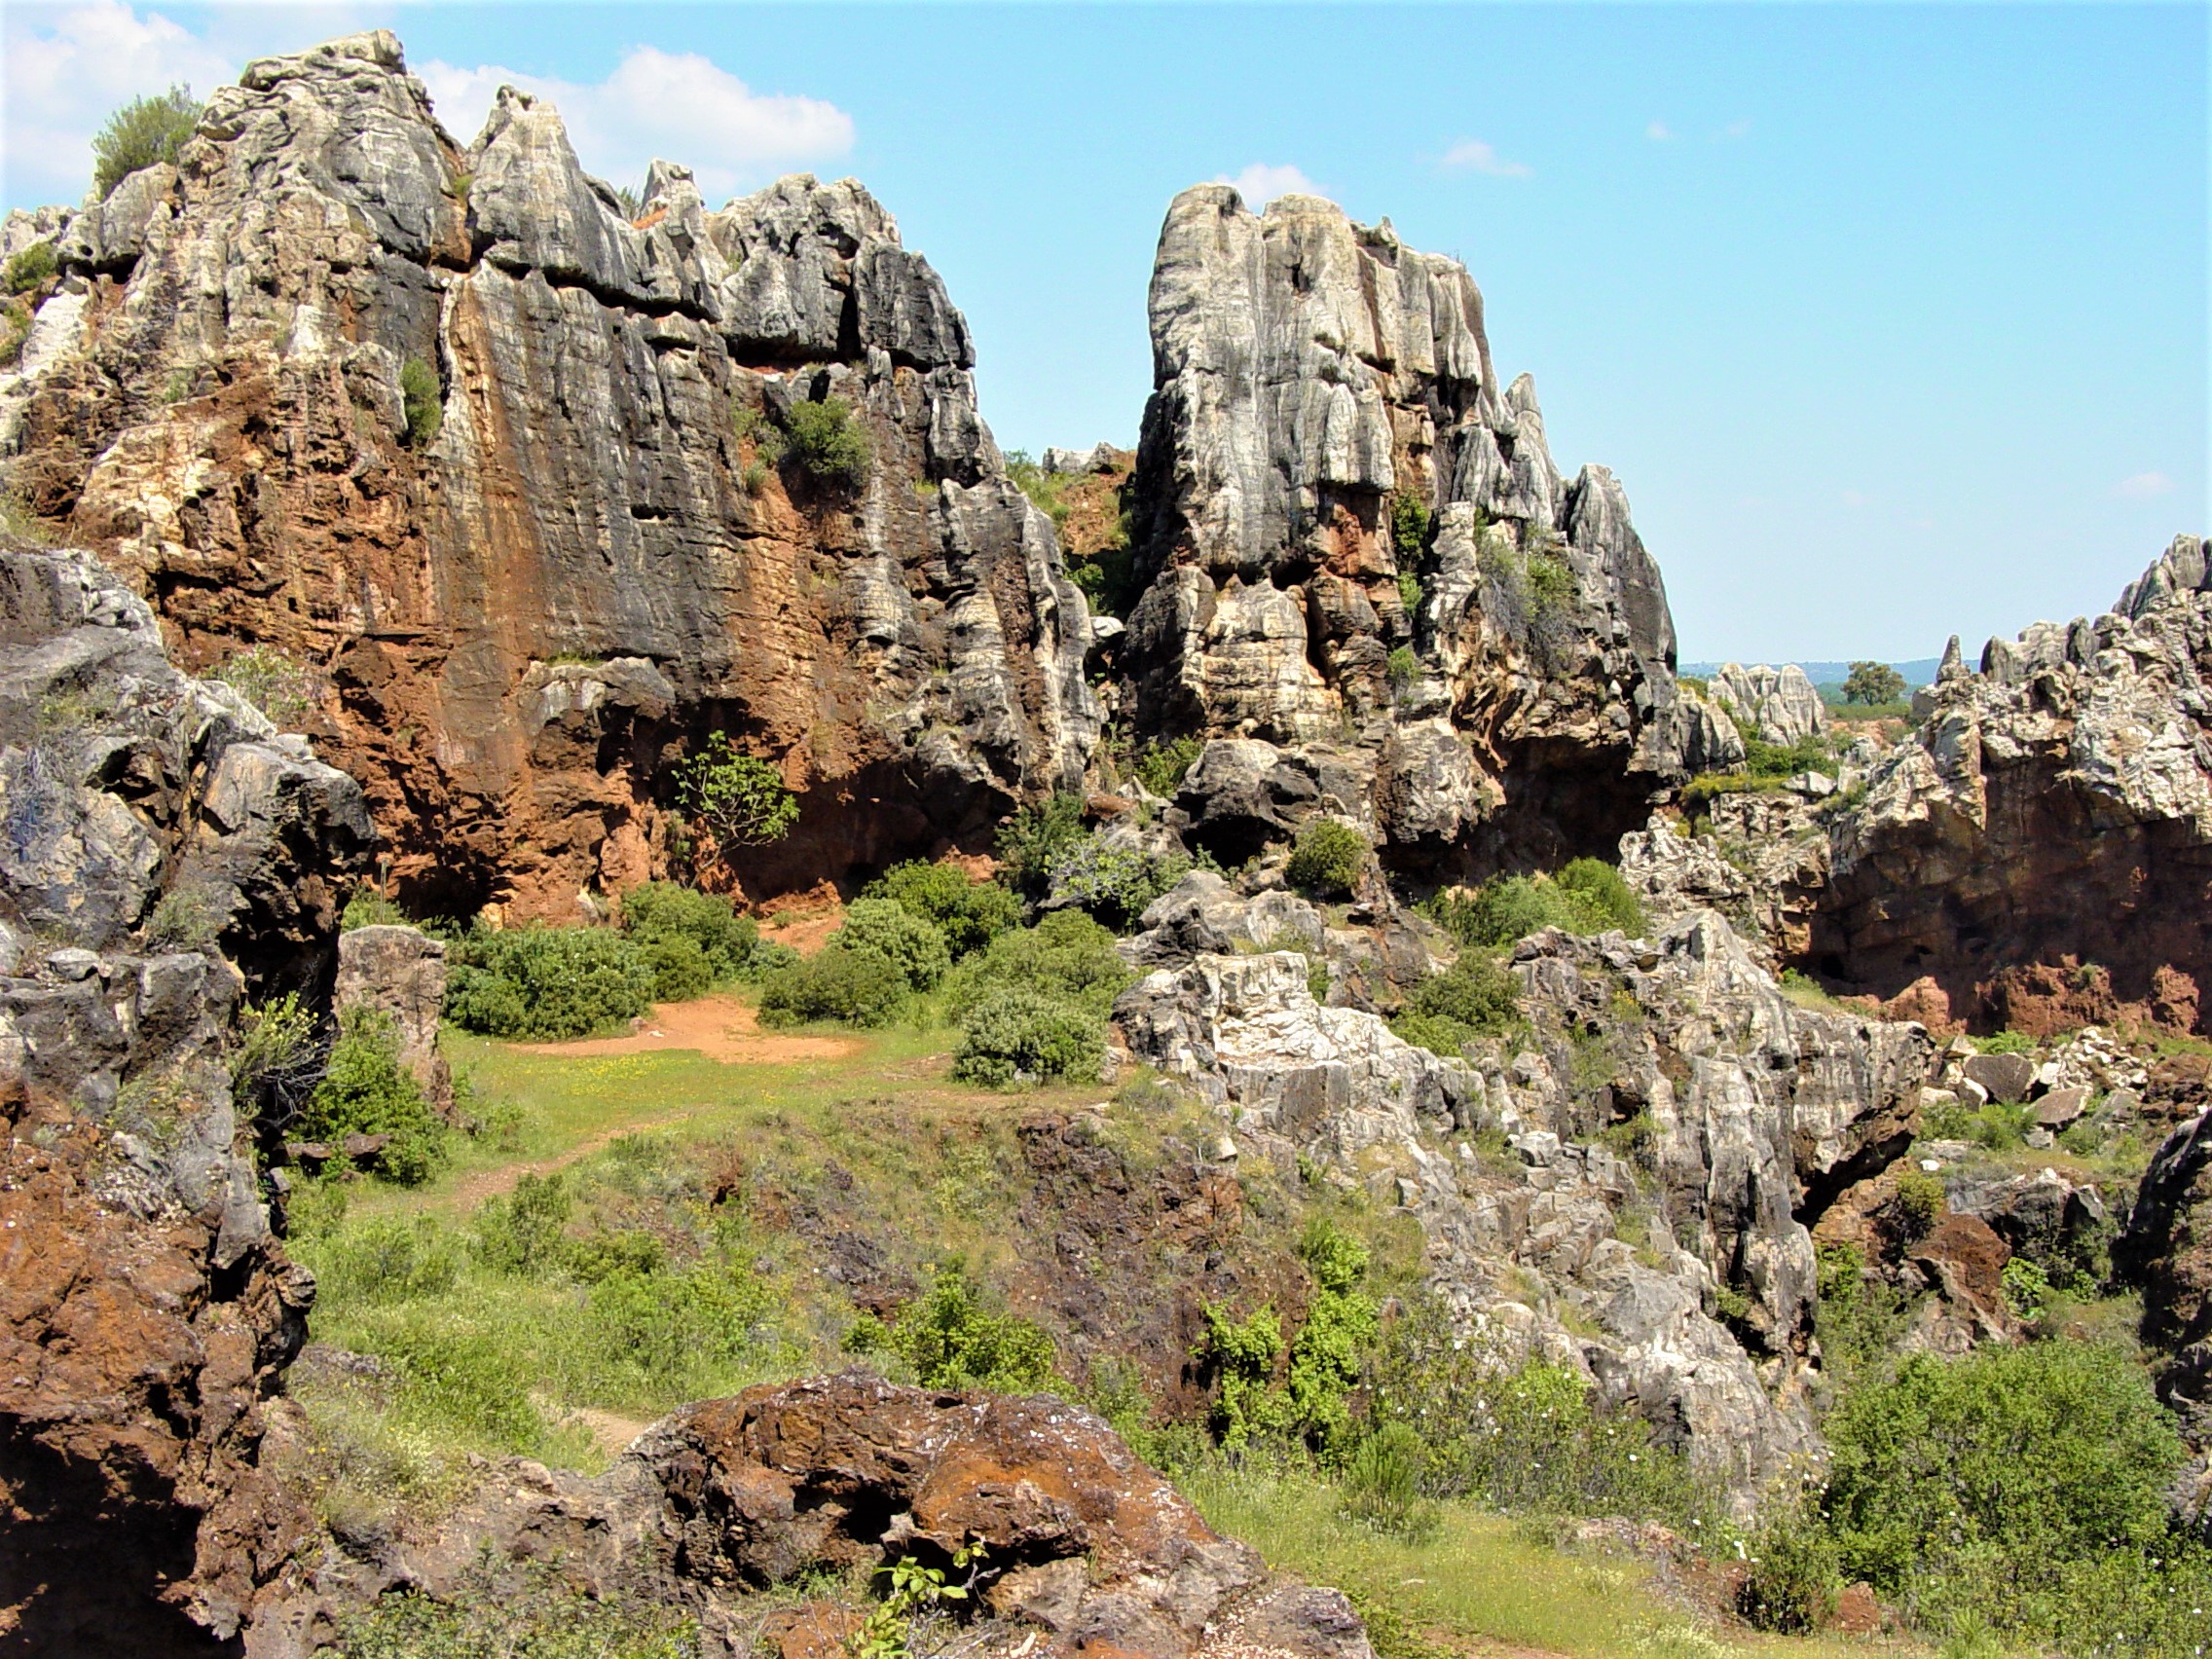 Ampliar imagen: Fotografía de formación rocosa con tonalidades rojizas debido al hierro del terreno. Cielo azul y vegetación verde